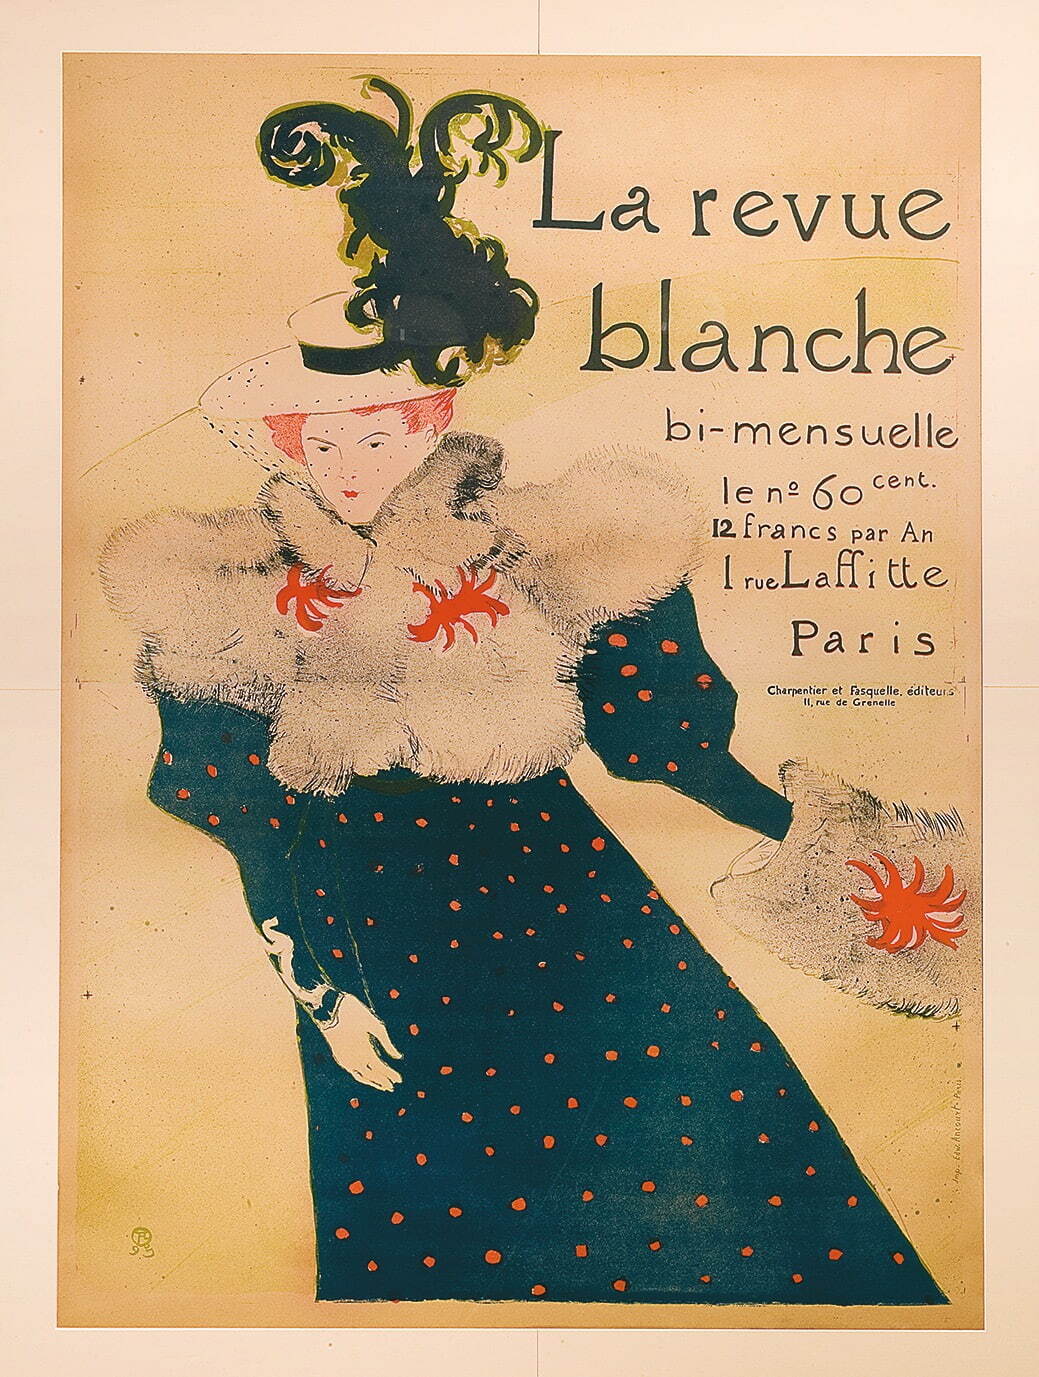 アンリ・ド・トゥールーズ＝ロートレック 『ラ・ルヴュ・ブランシュ』誌のためのポスター
1895年 リトグラフ The Firos Collection